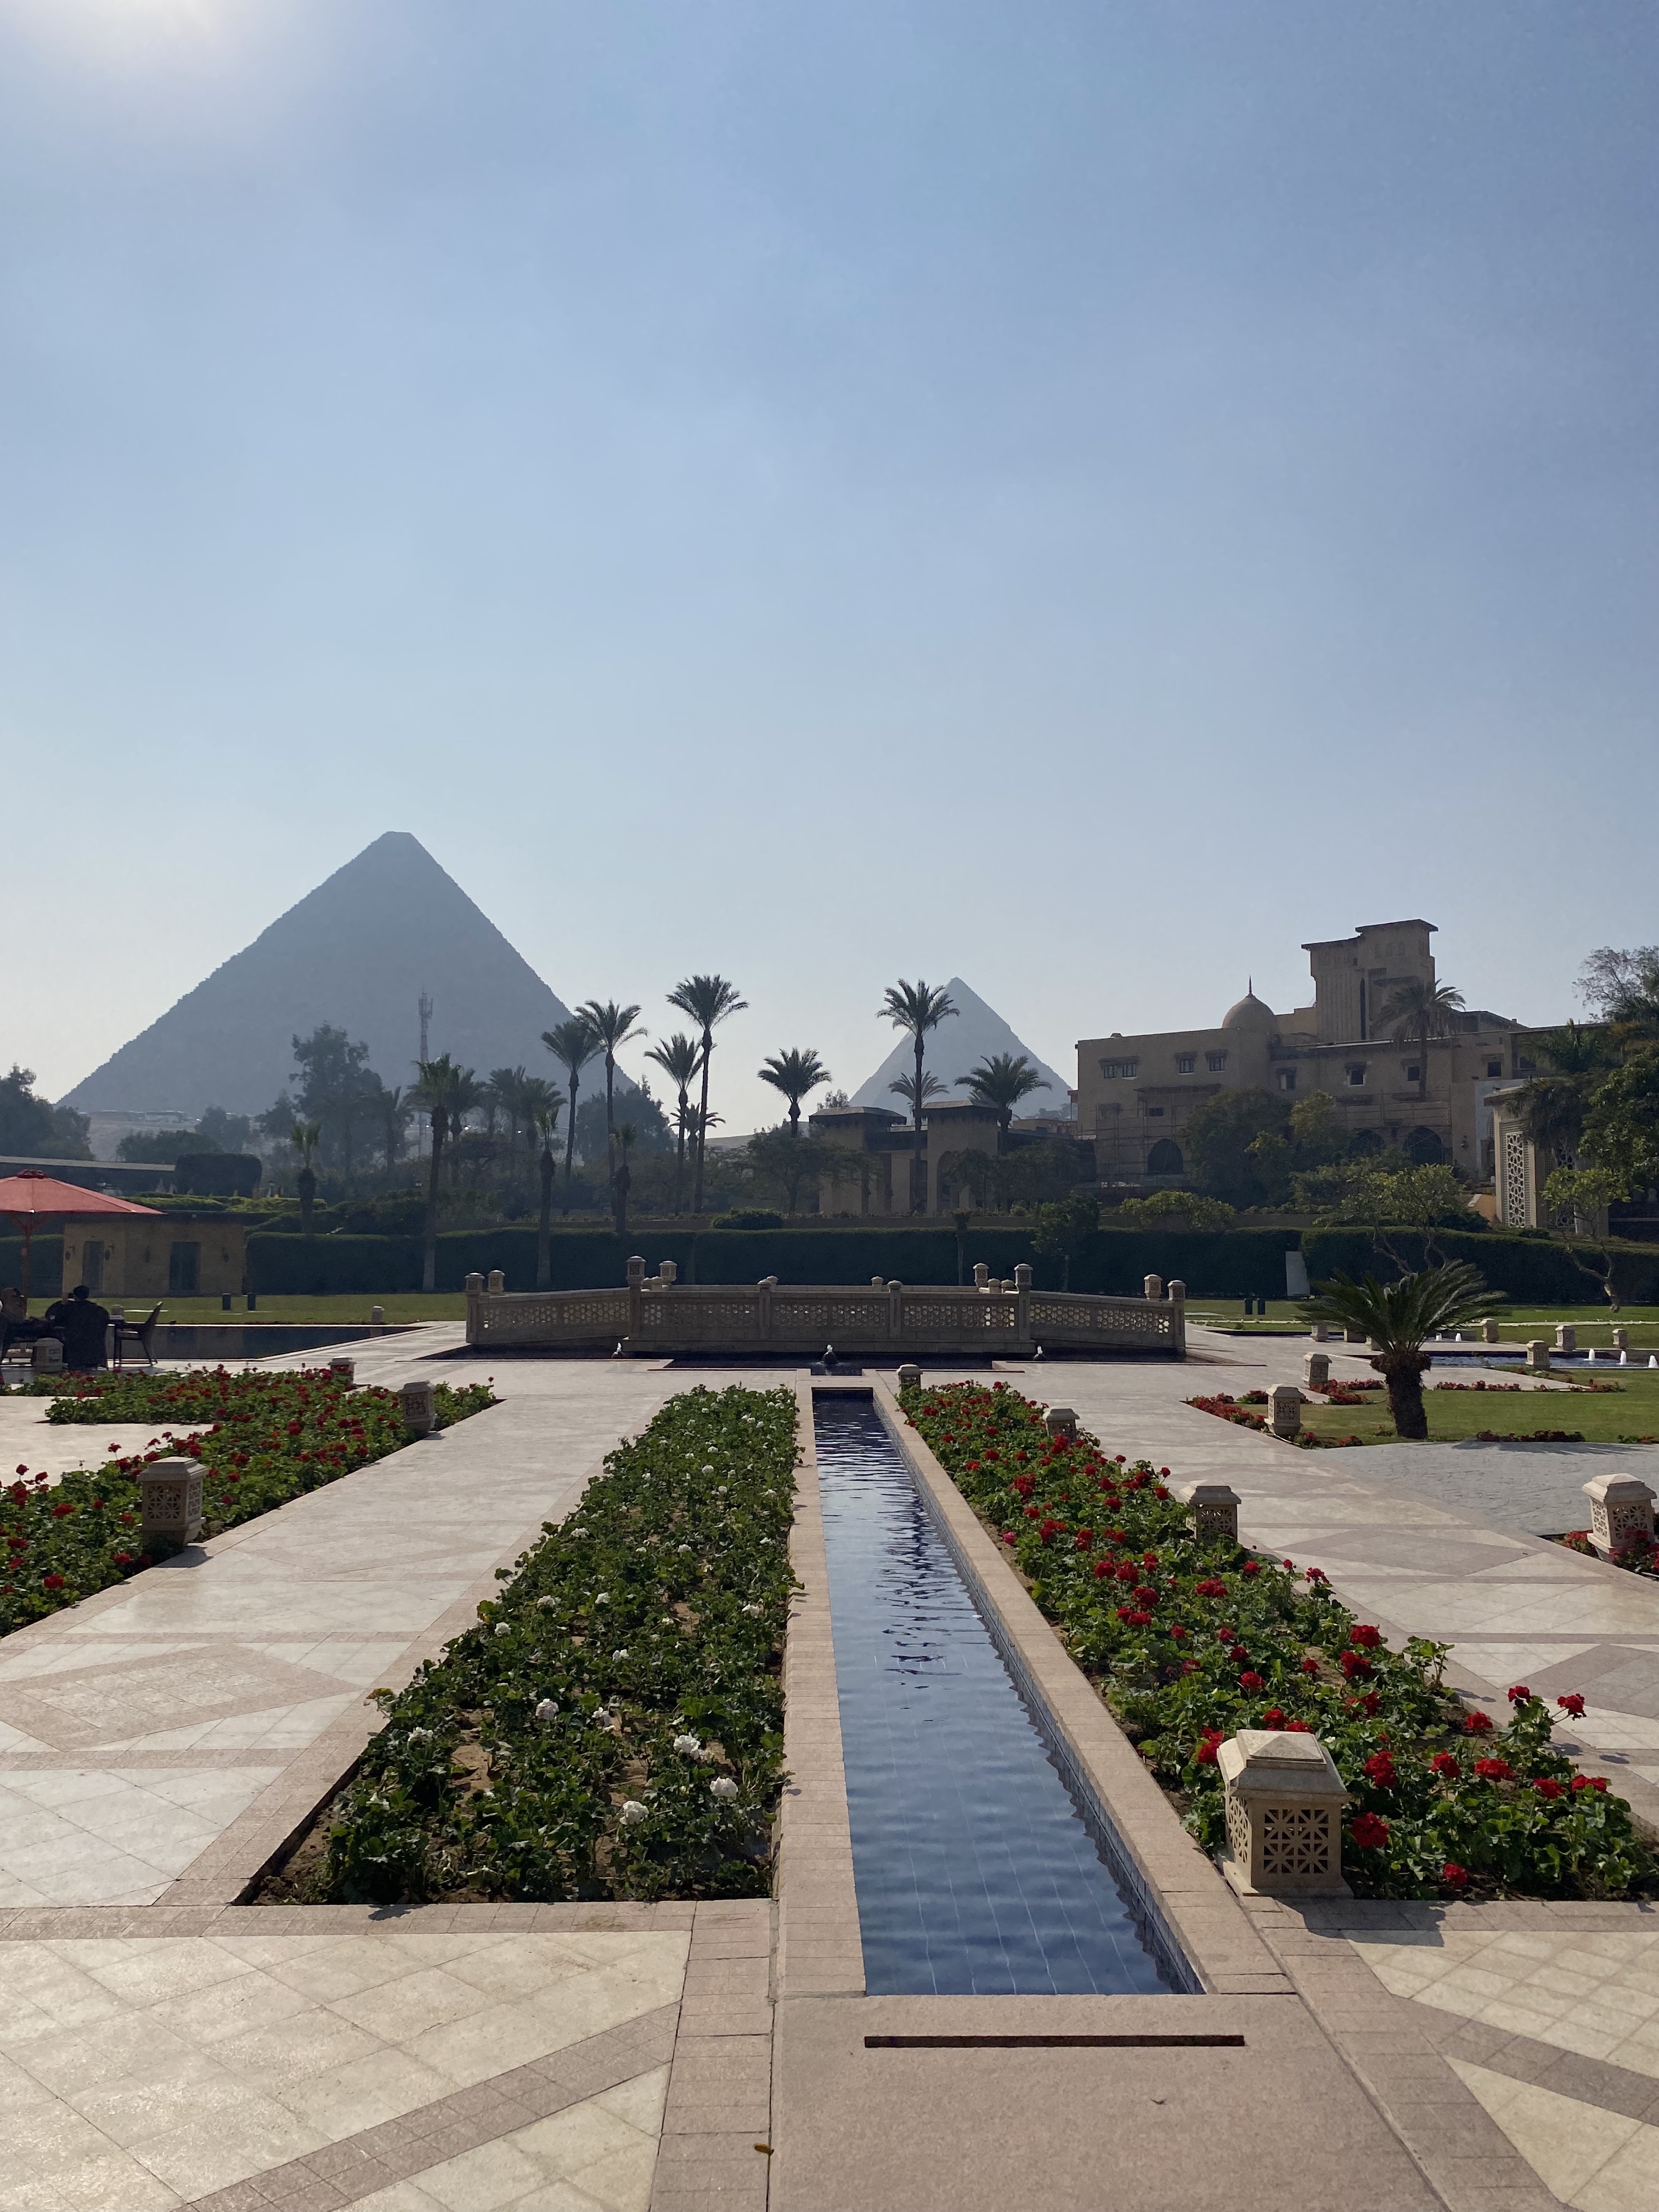 Hôtel Marriott au pied des Pyramides